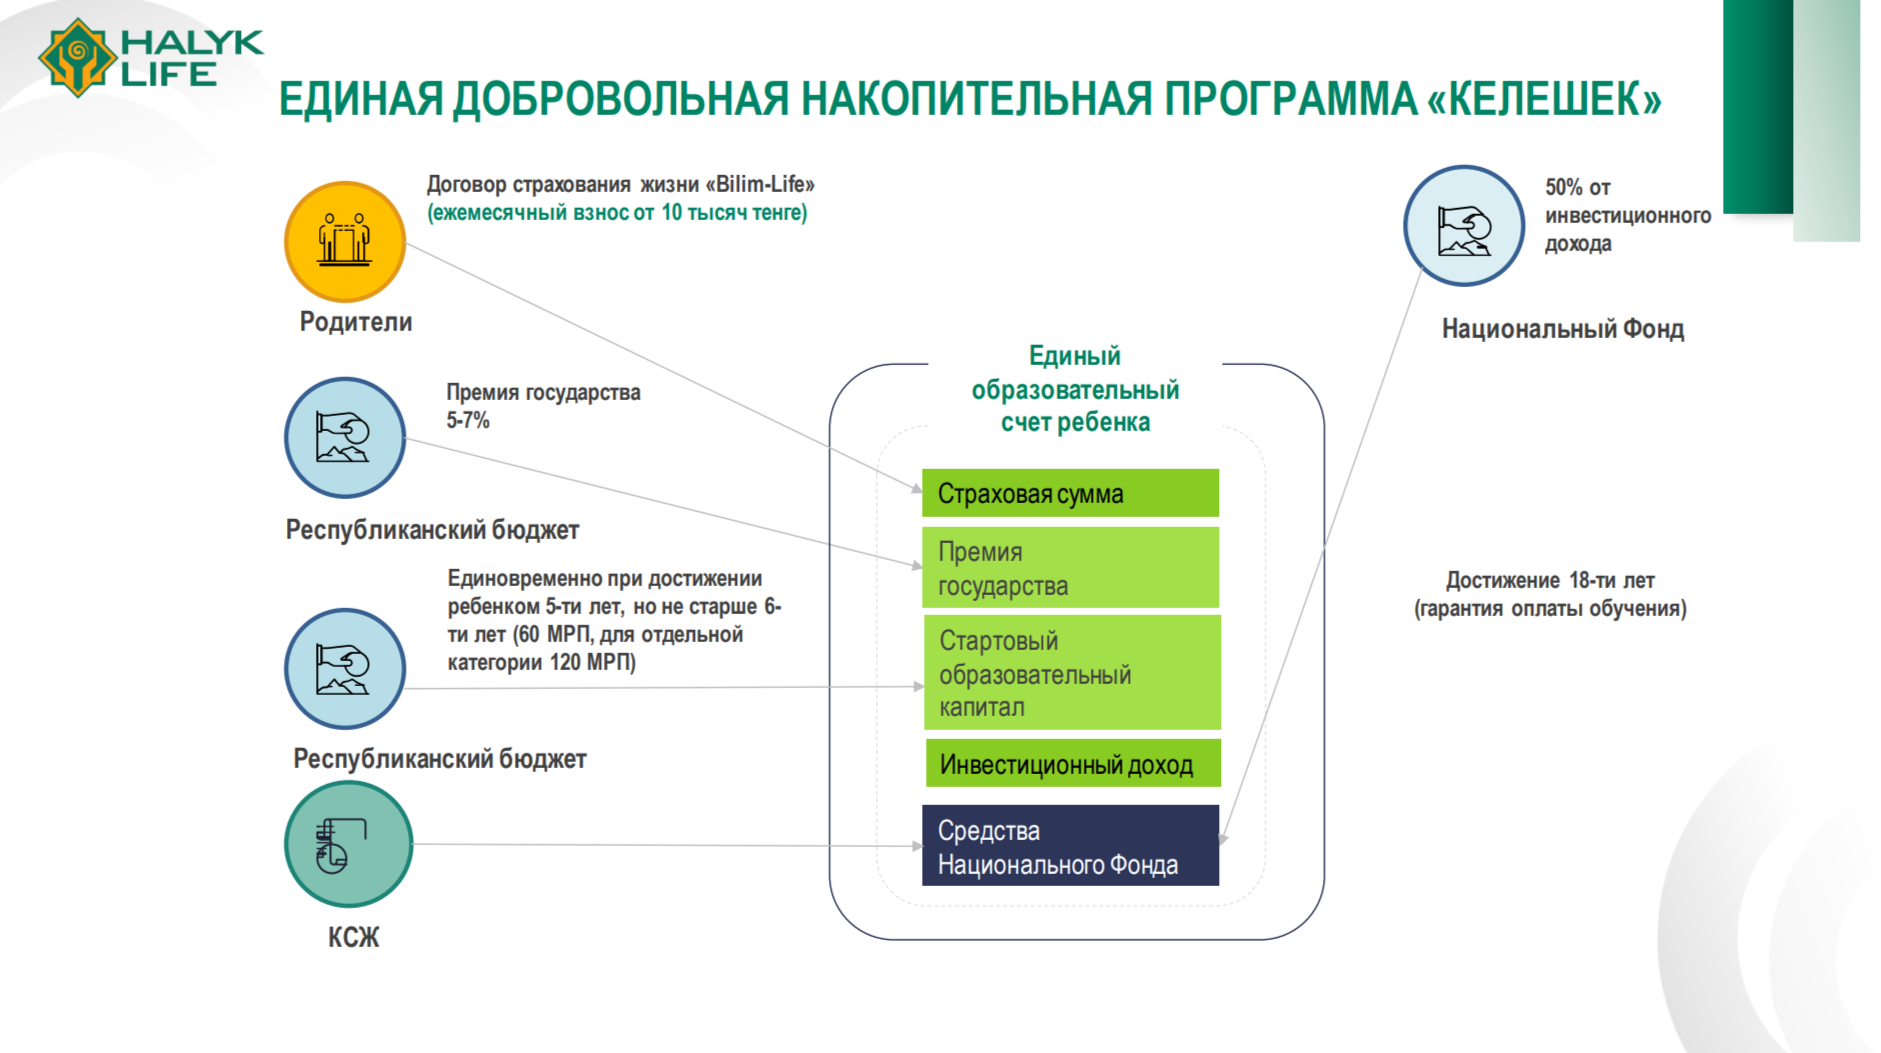 Что сдерживает развитие рынка страхования жизни в Казахстане 2959632 — Kapital.kz 